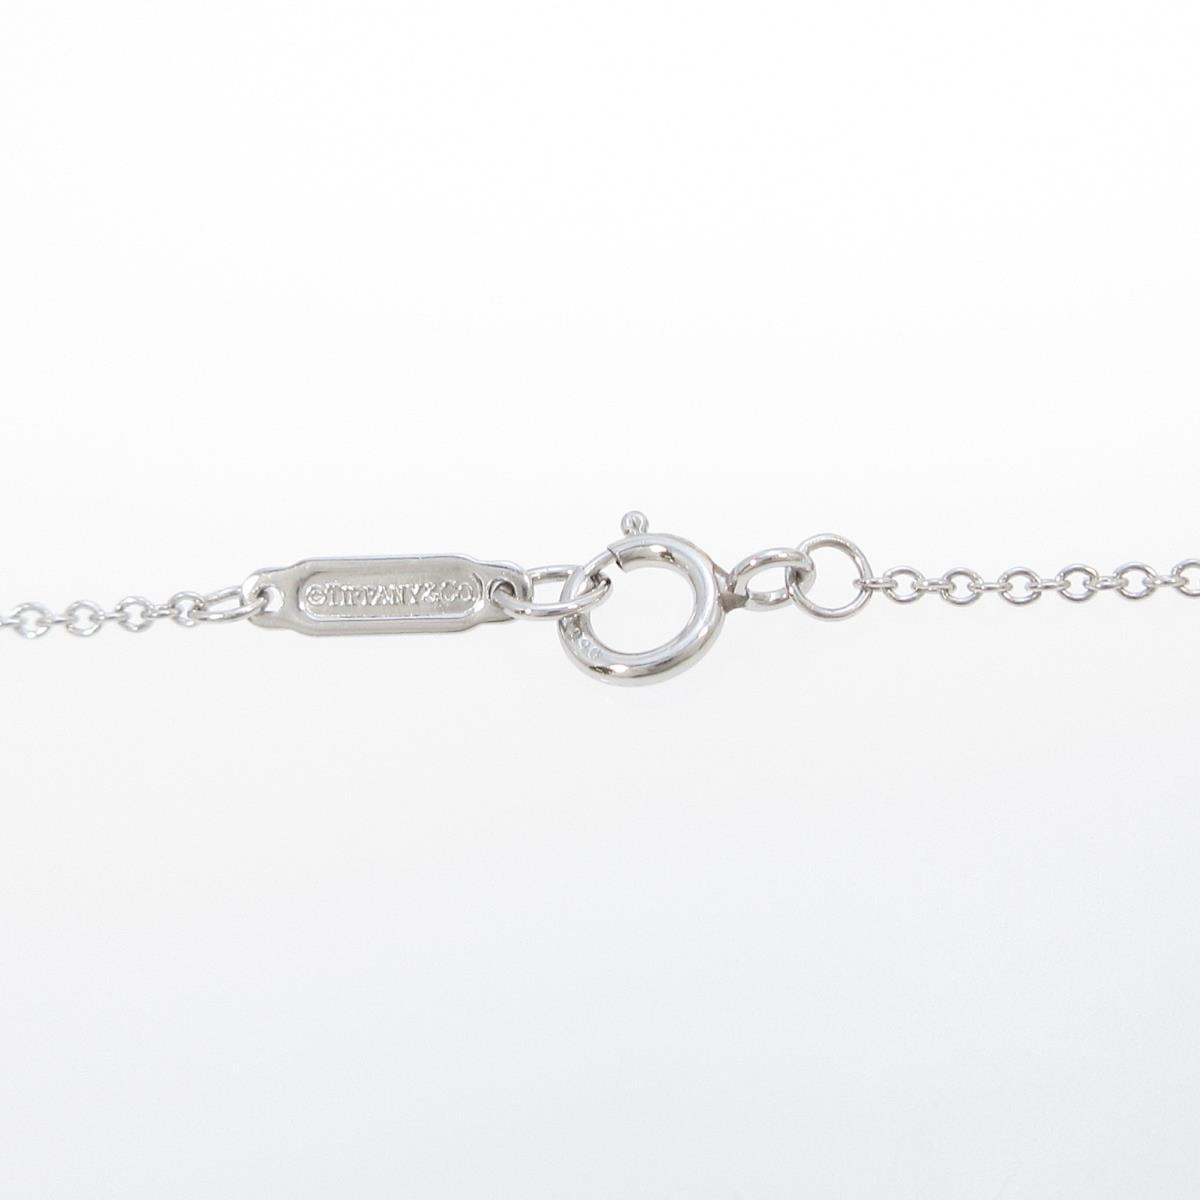 Authentic TIFFANY Bezel Cross Necklace #246-000-225-6818 | eBay